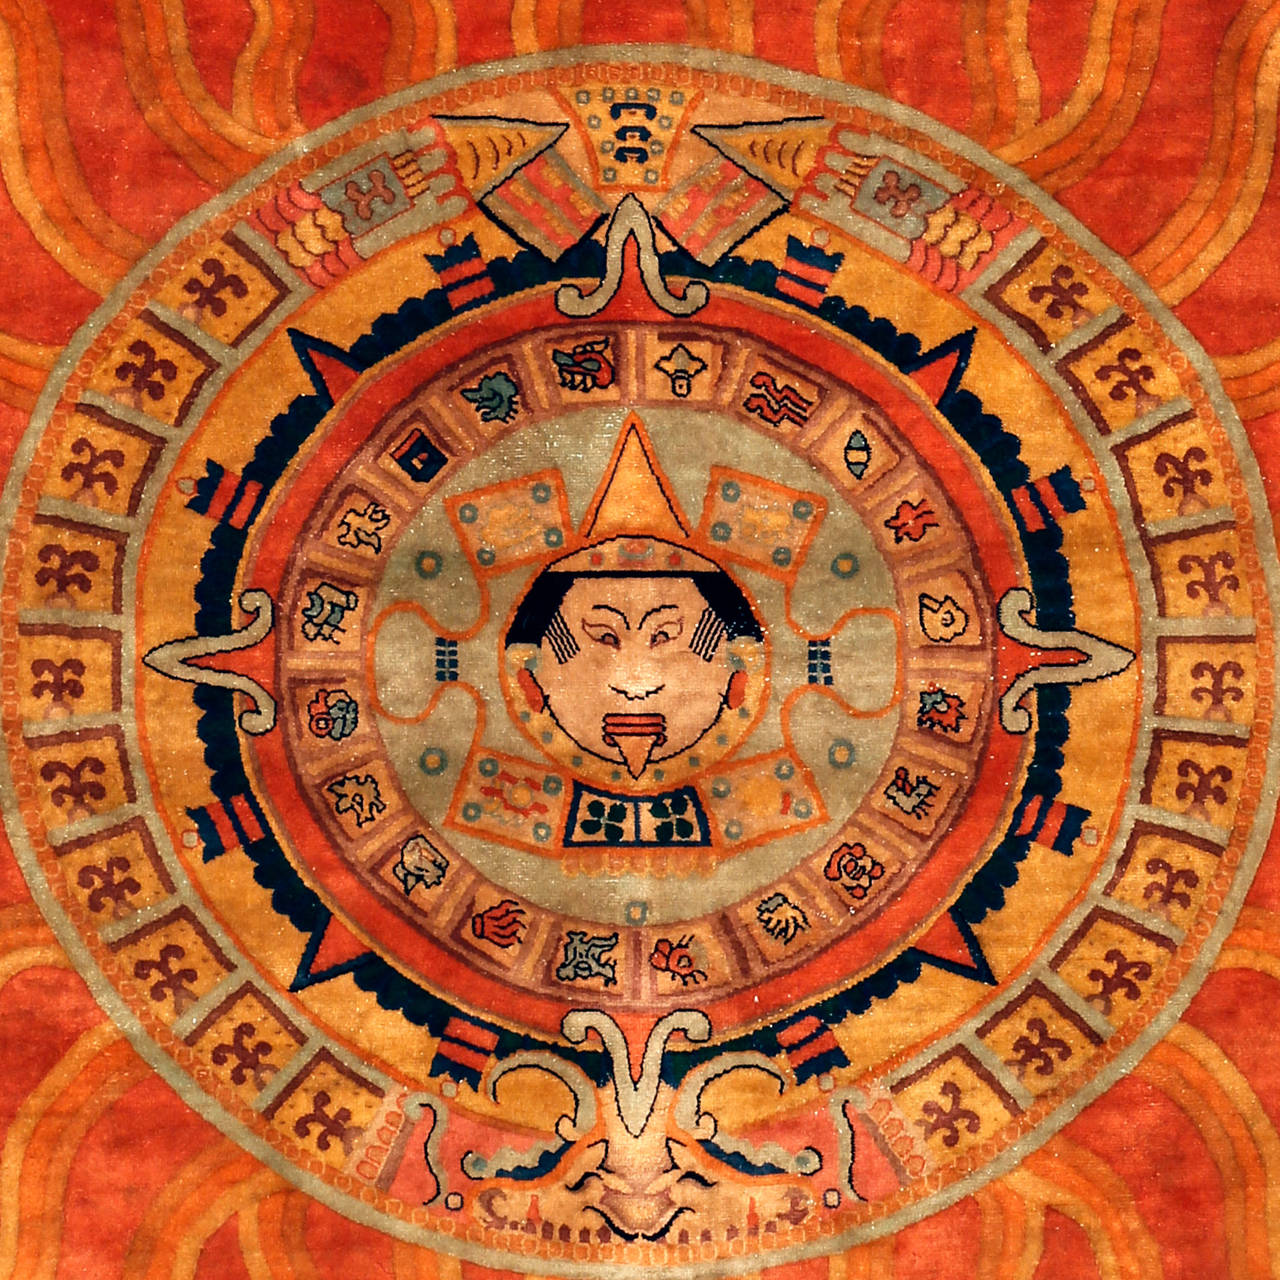 Dieser ungewöhnliche quadratische Teppich, der vor einigen Jahren in China beschafft wurde, stellt die Symbolik der aztekischen Sonnenuhr dar. Diese sind in Kreise eingeschrieben, in deren Zentrum ein menschliches Abbild steht, möglicherweise die